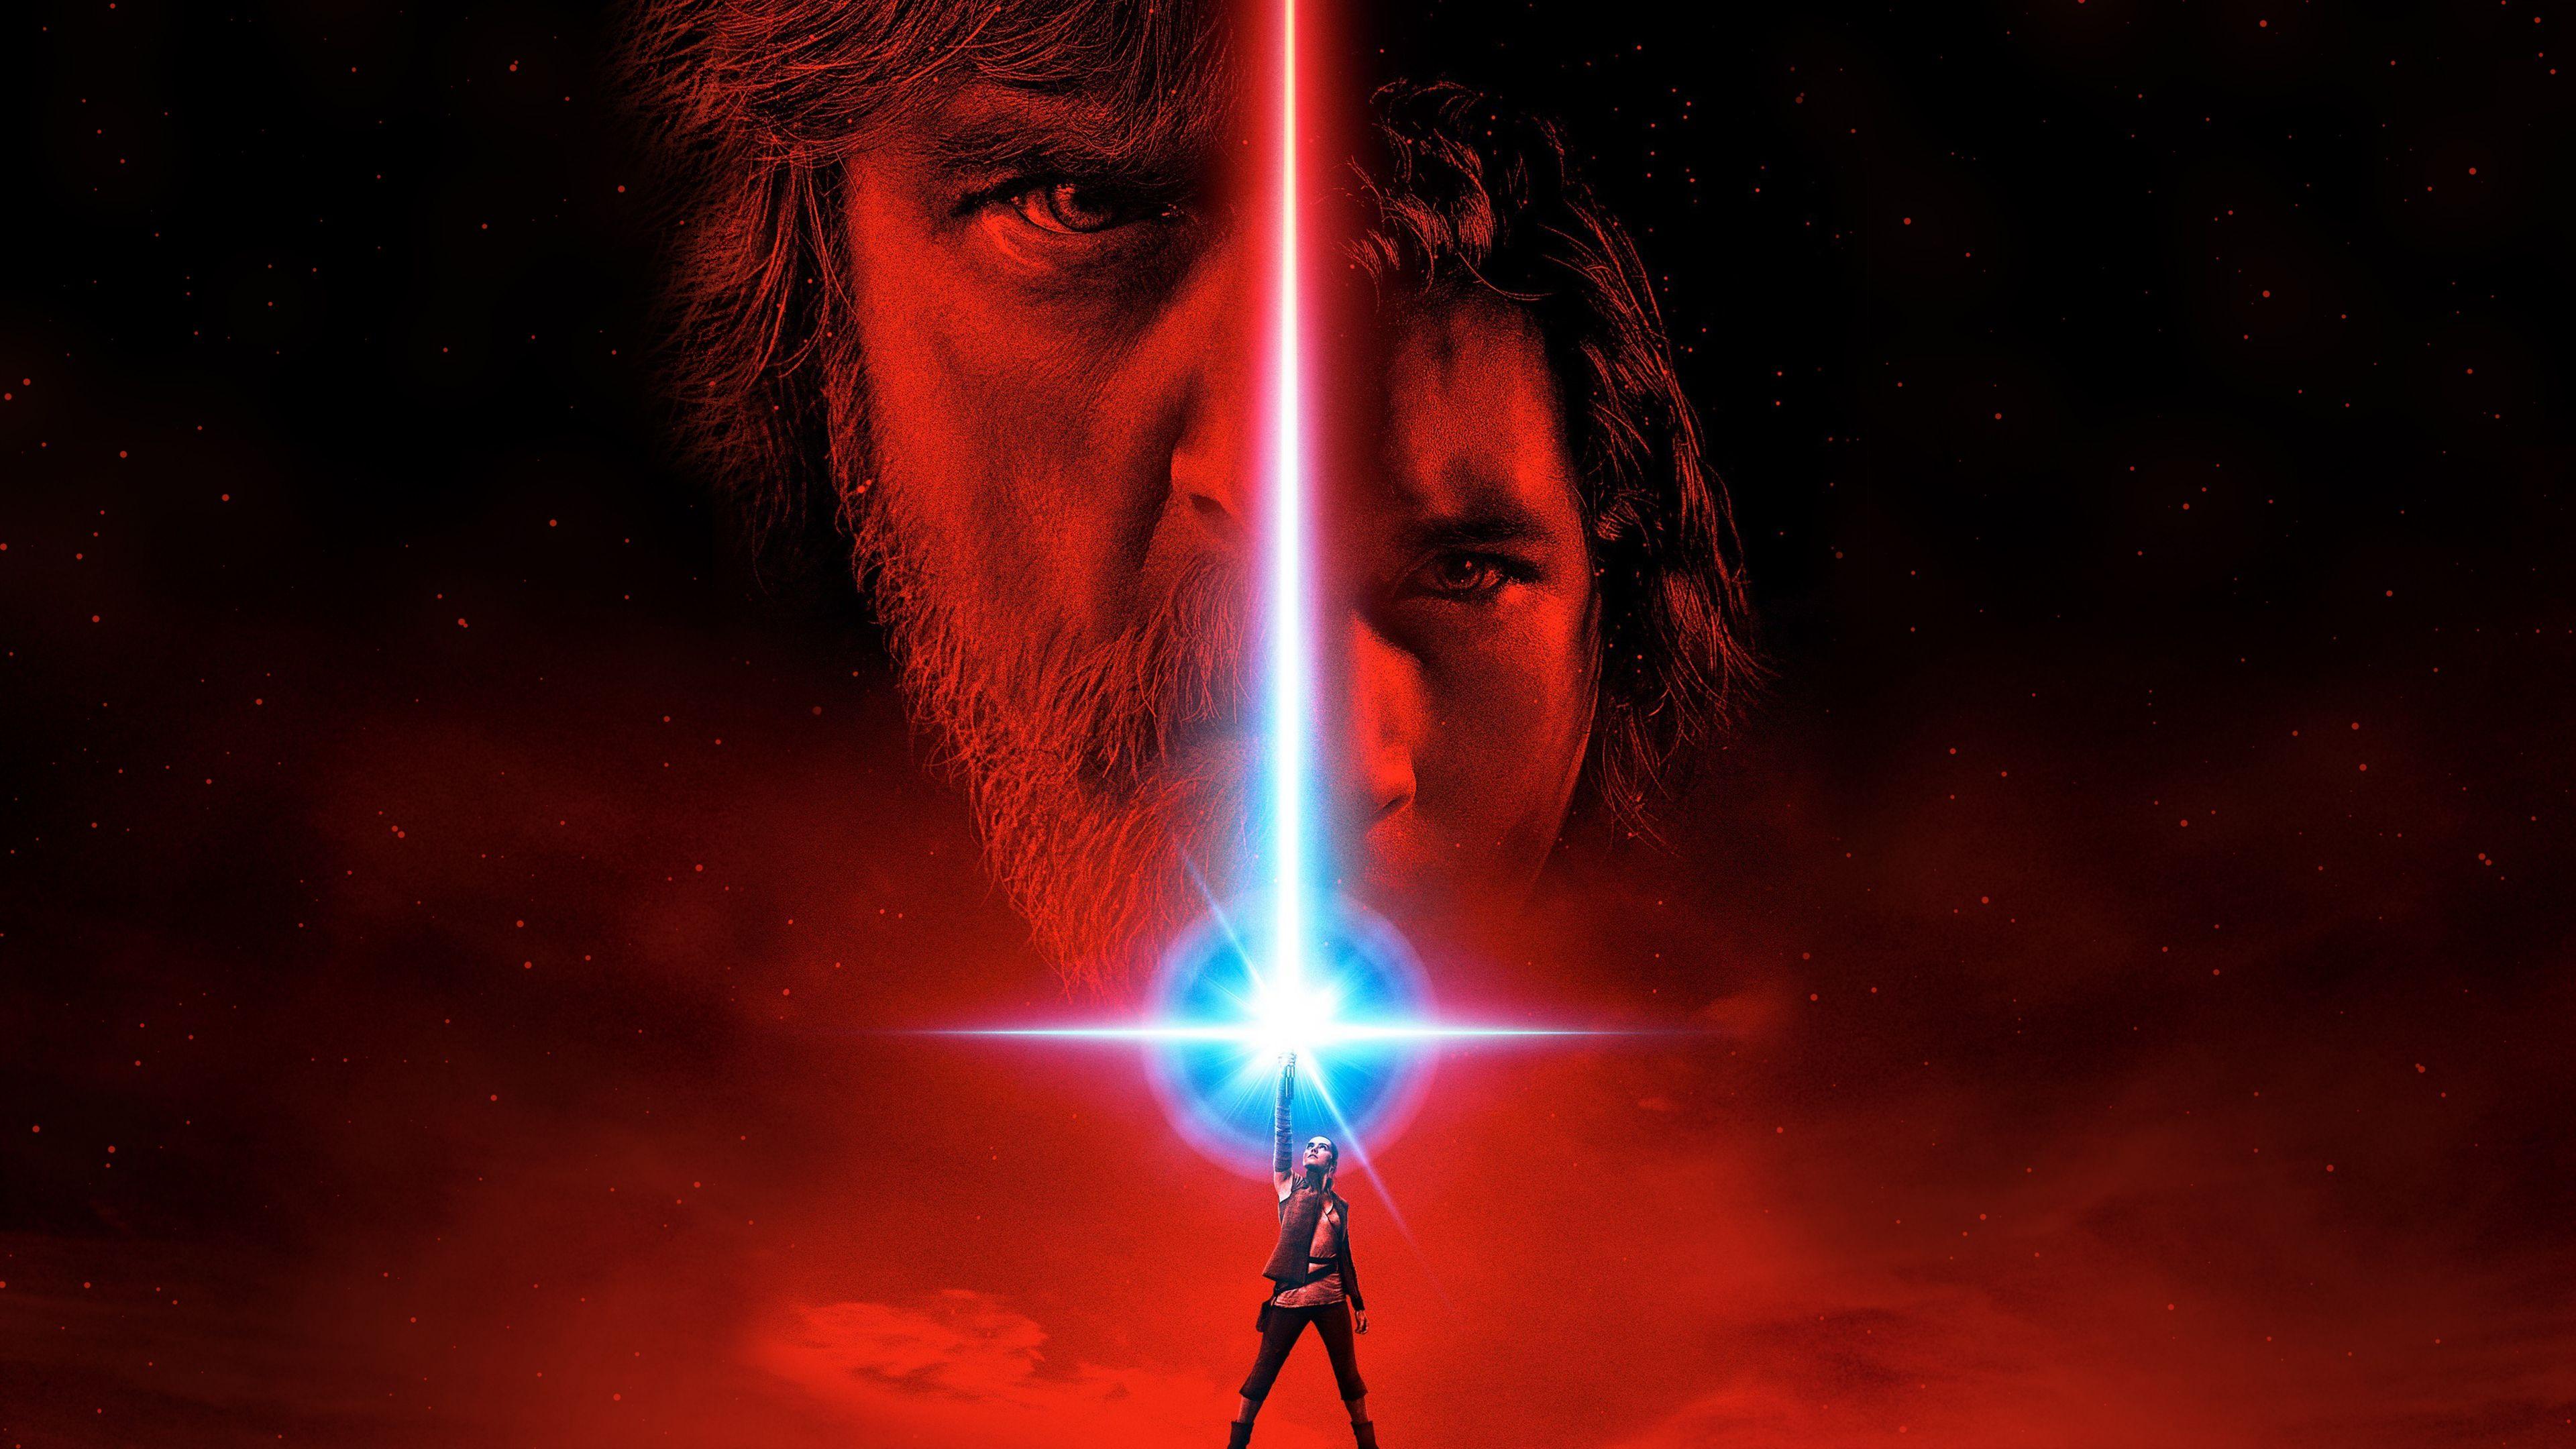 Wallpaper Star Wars: The Last Jedi, 4K, Movies